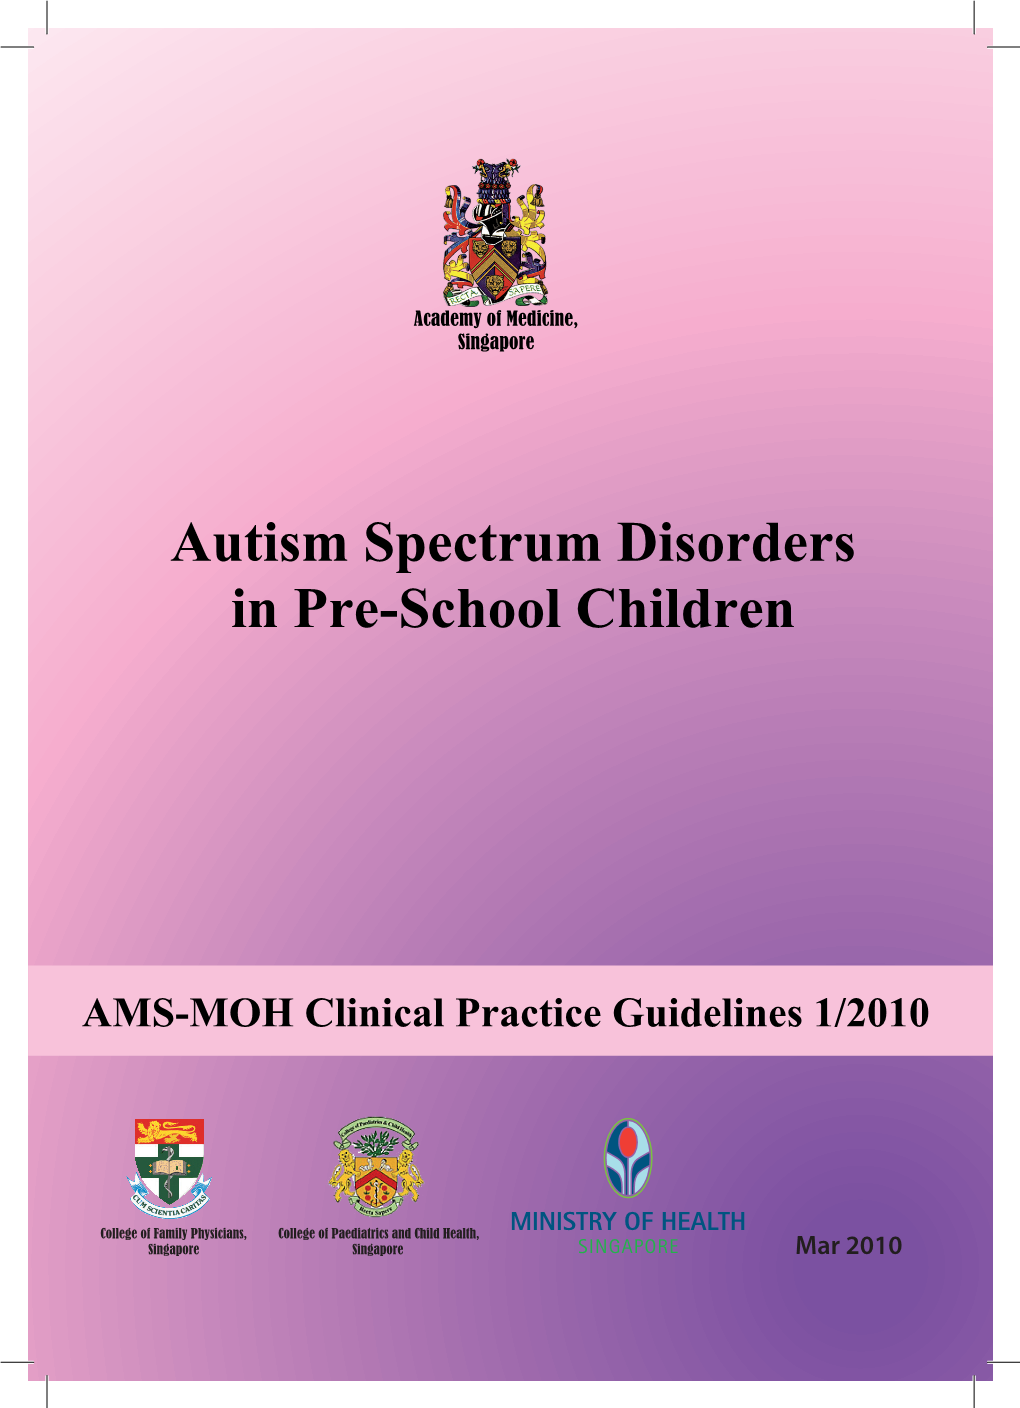 Autism Spectrum Disorders in Pre-School Children